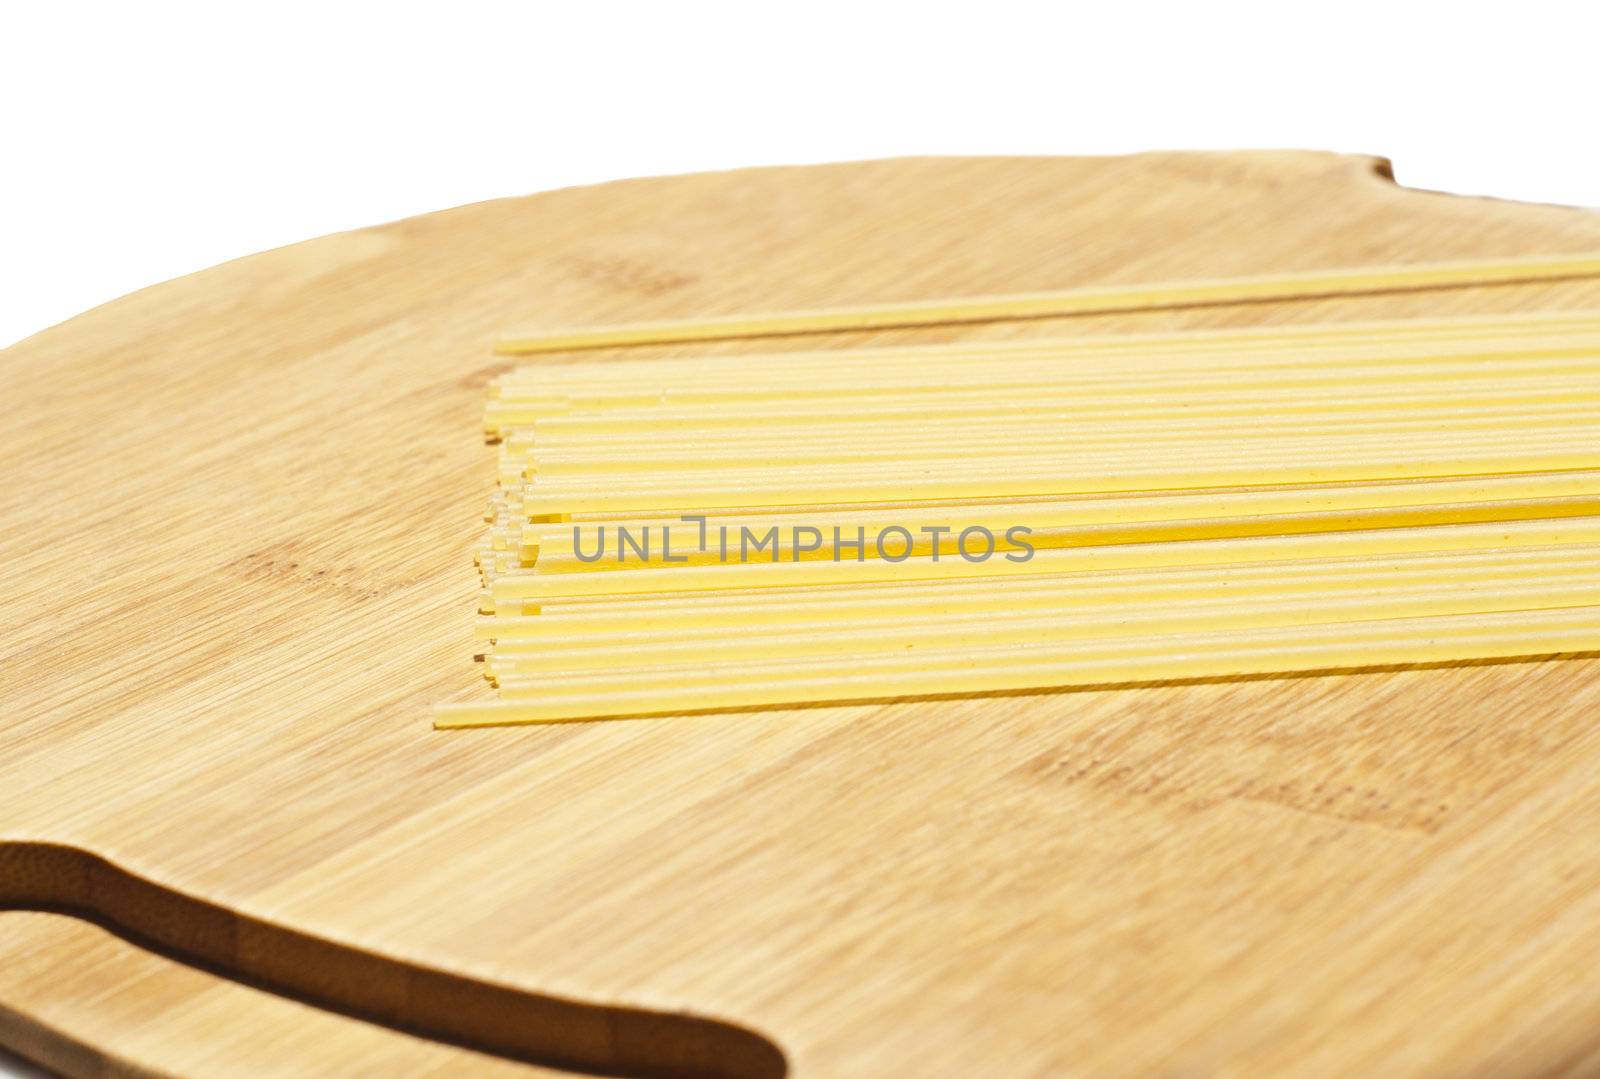 spaghetti on wooden board by gandolfocannatella